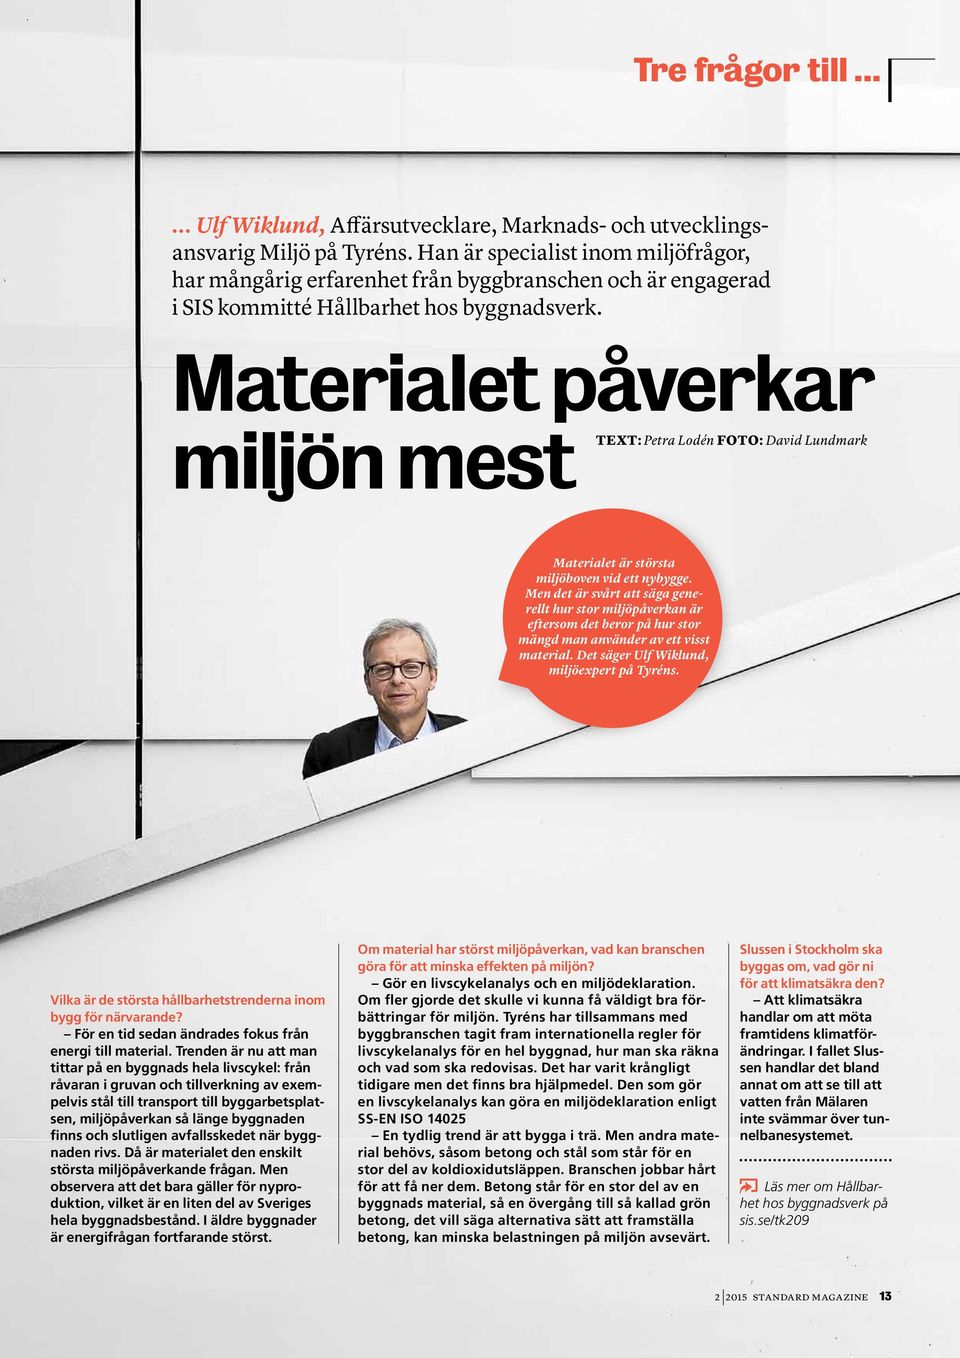 Materialet påverkar miljön mest Text: Petra Lodén Foto: David Lundmark Materialet är största miljöboven vid ett nybygge.